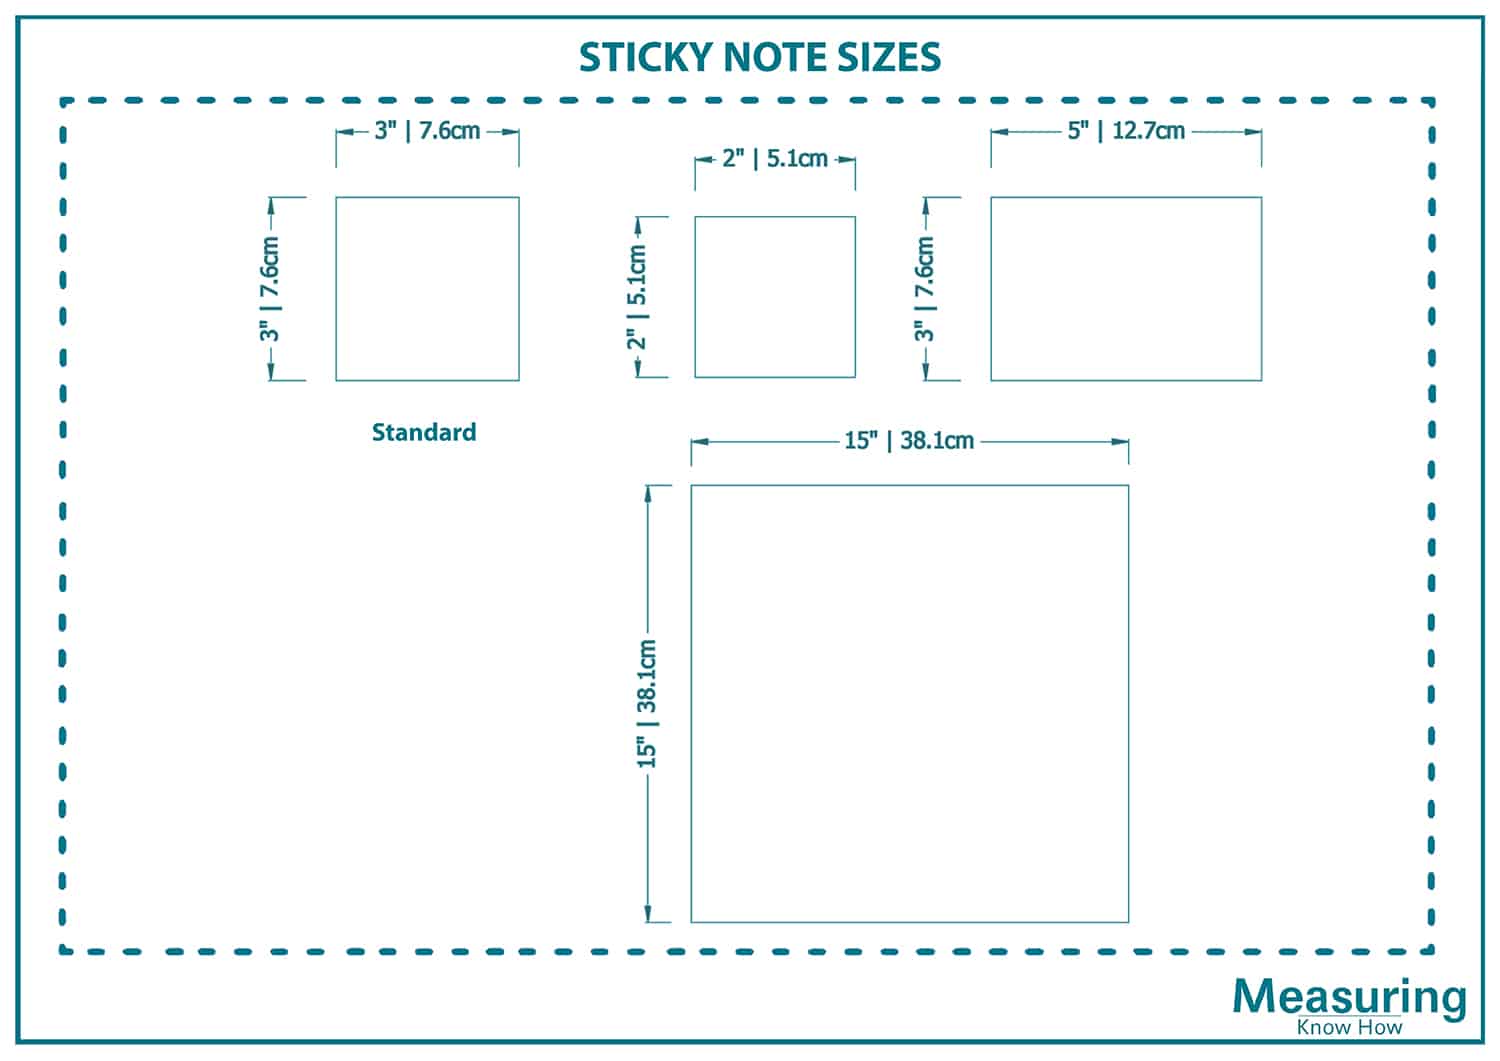 Sticky note sizes